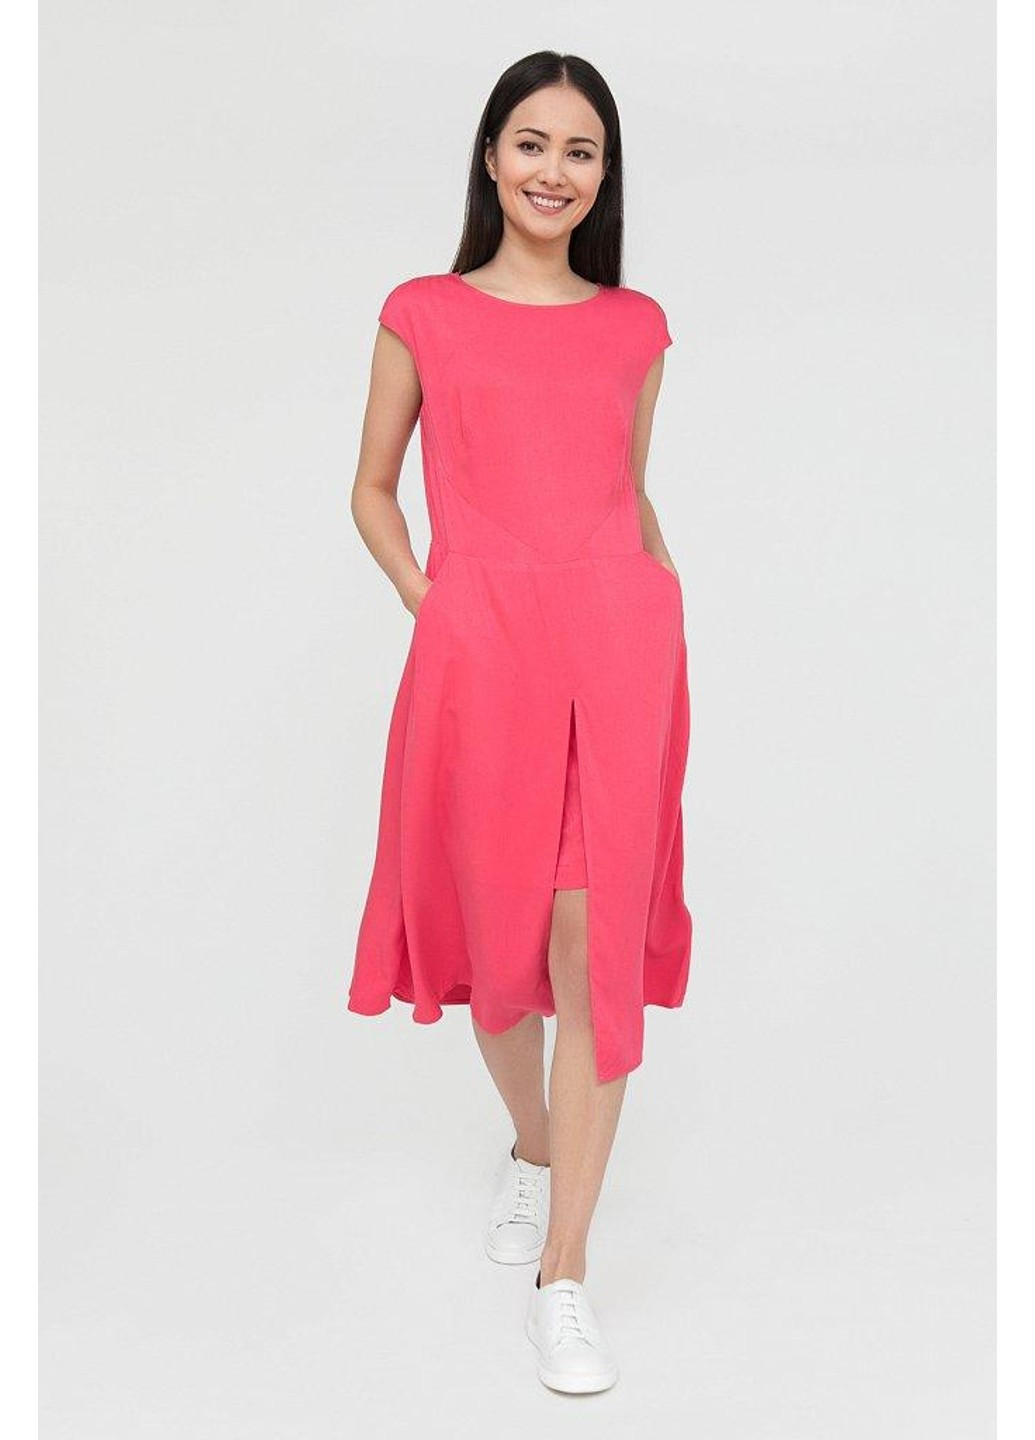 Розовое повседневный платье s20-110131-334 а-силуэт Finn Flare однотонное